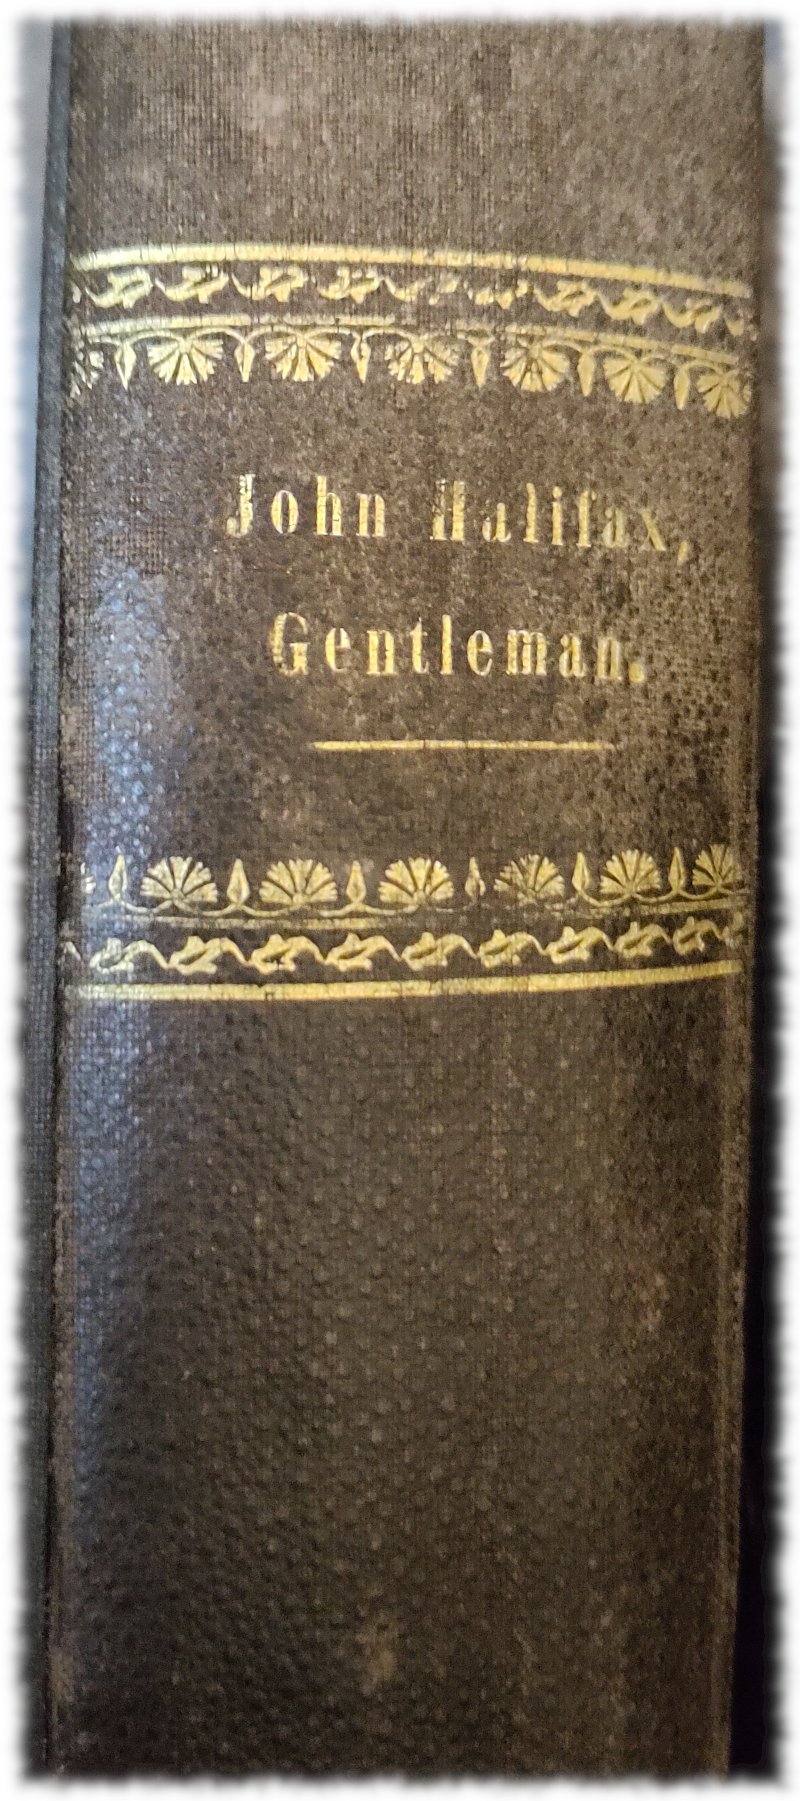 Buchrücken von John Halifax, Gentleman, Goldprägung auf sowas wie Leder